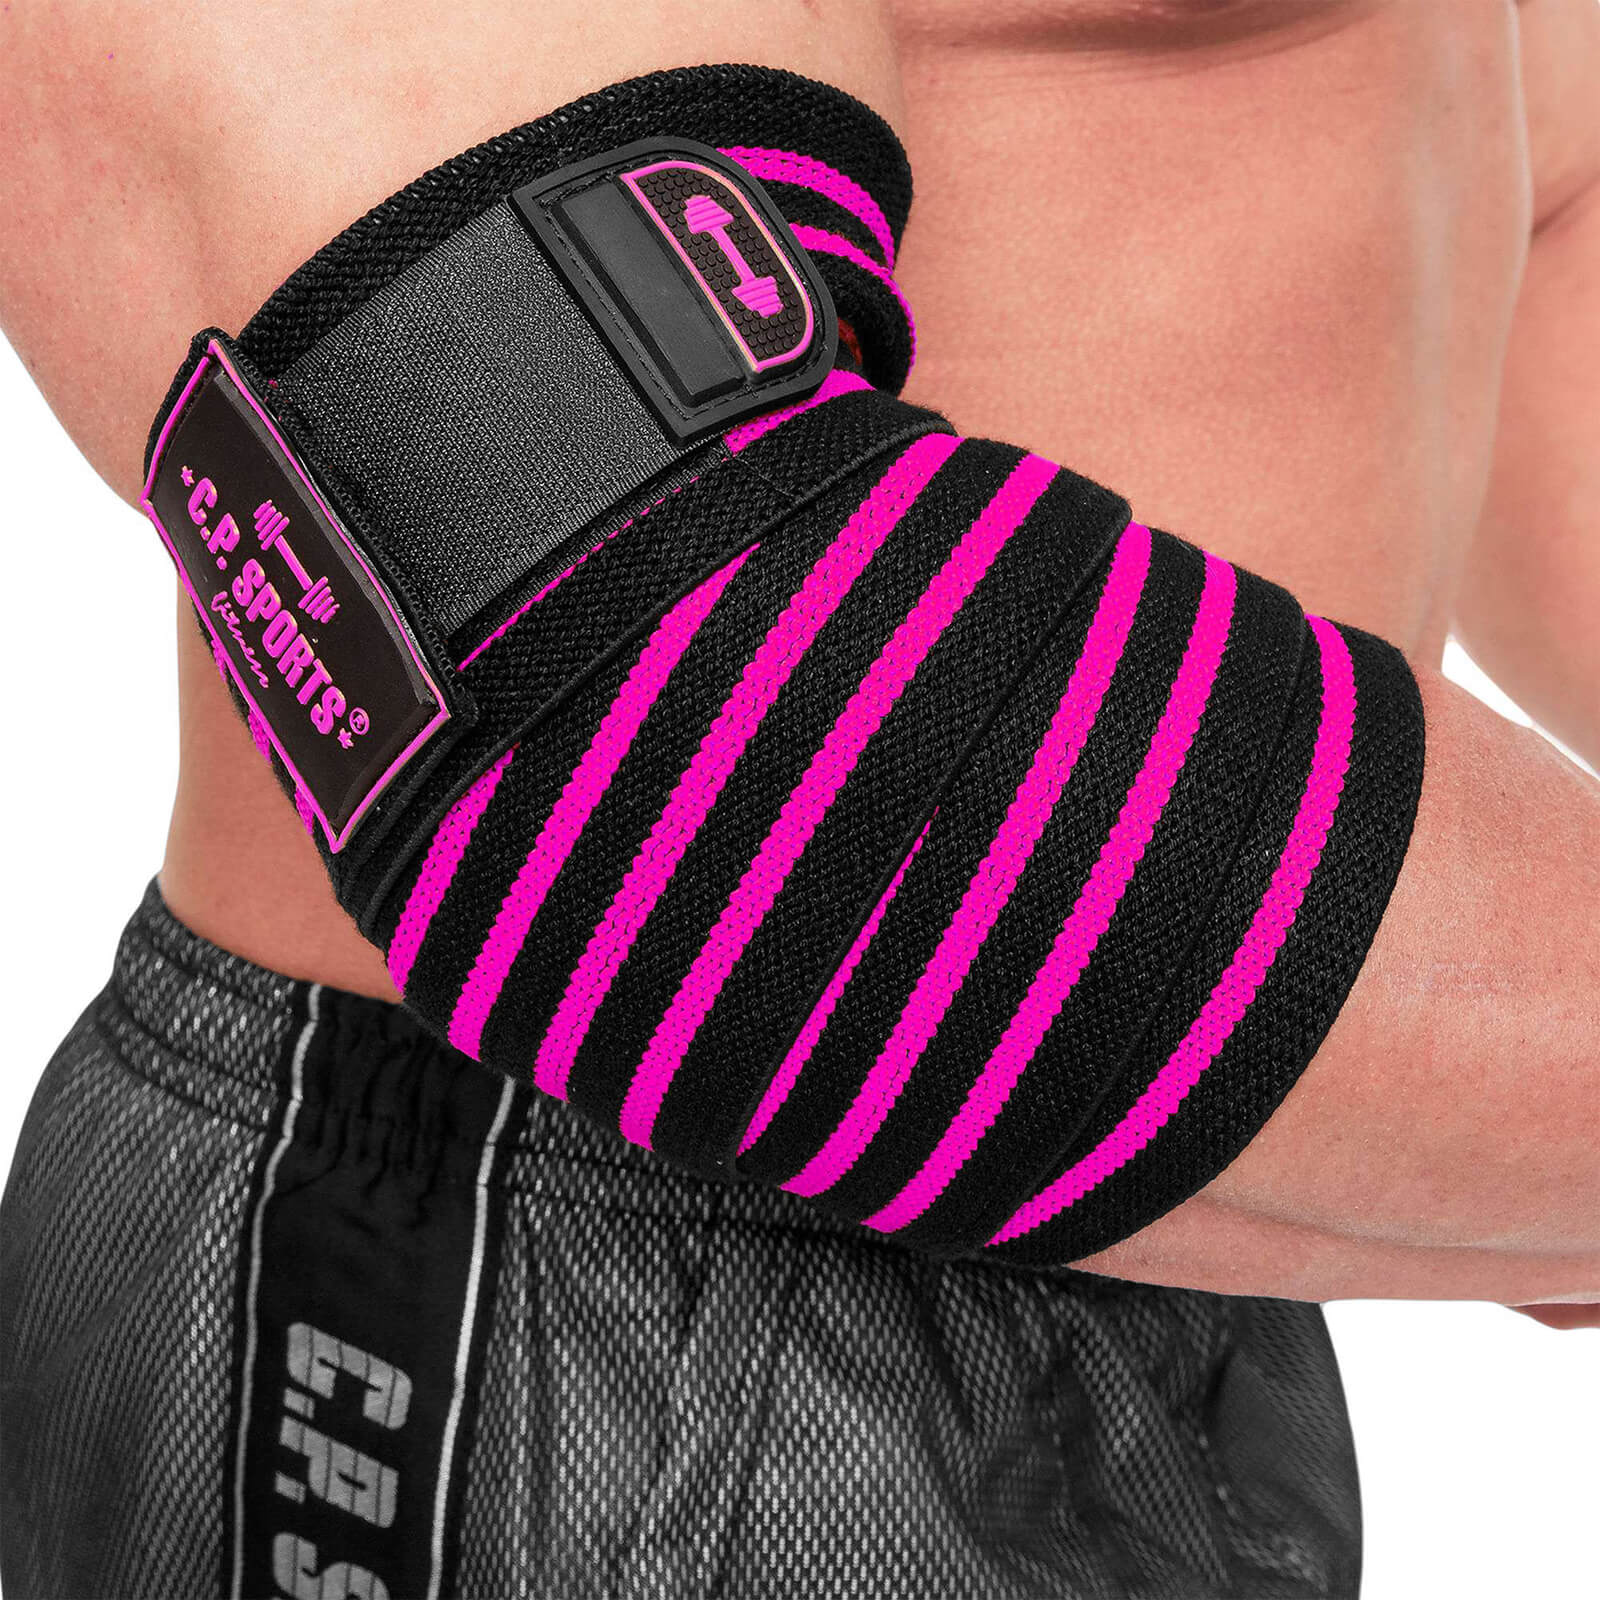 Elbow Wraps Pro, 1.3 cm, black/pink, C.P. Sports